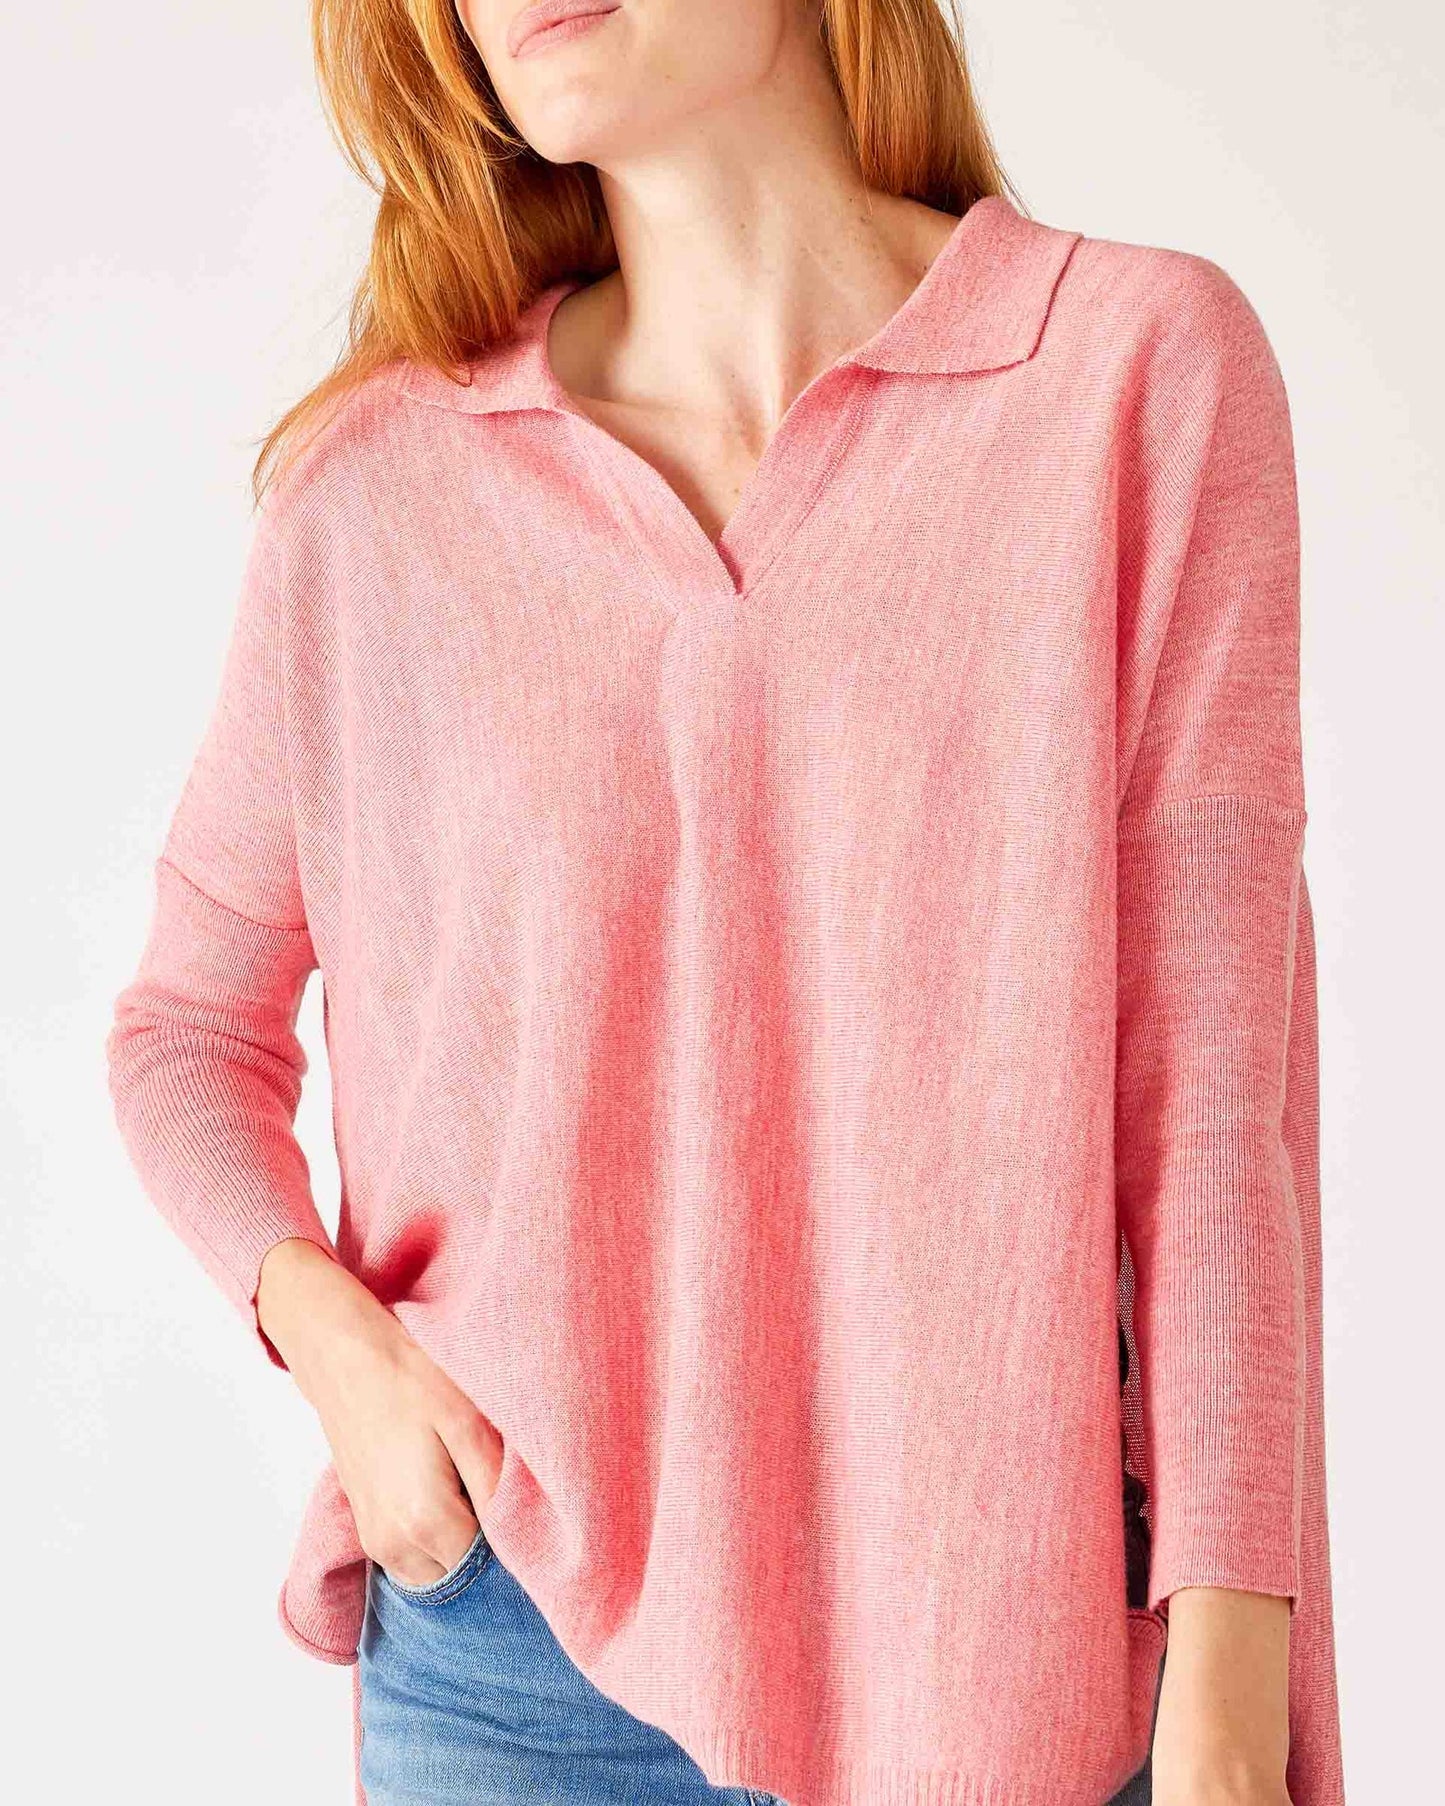 MerSea - Catalina Polo Sweater - Sea Pink